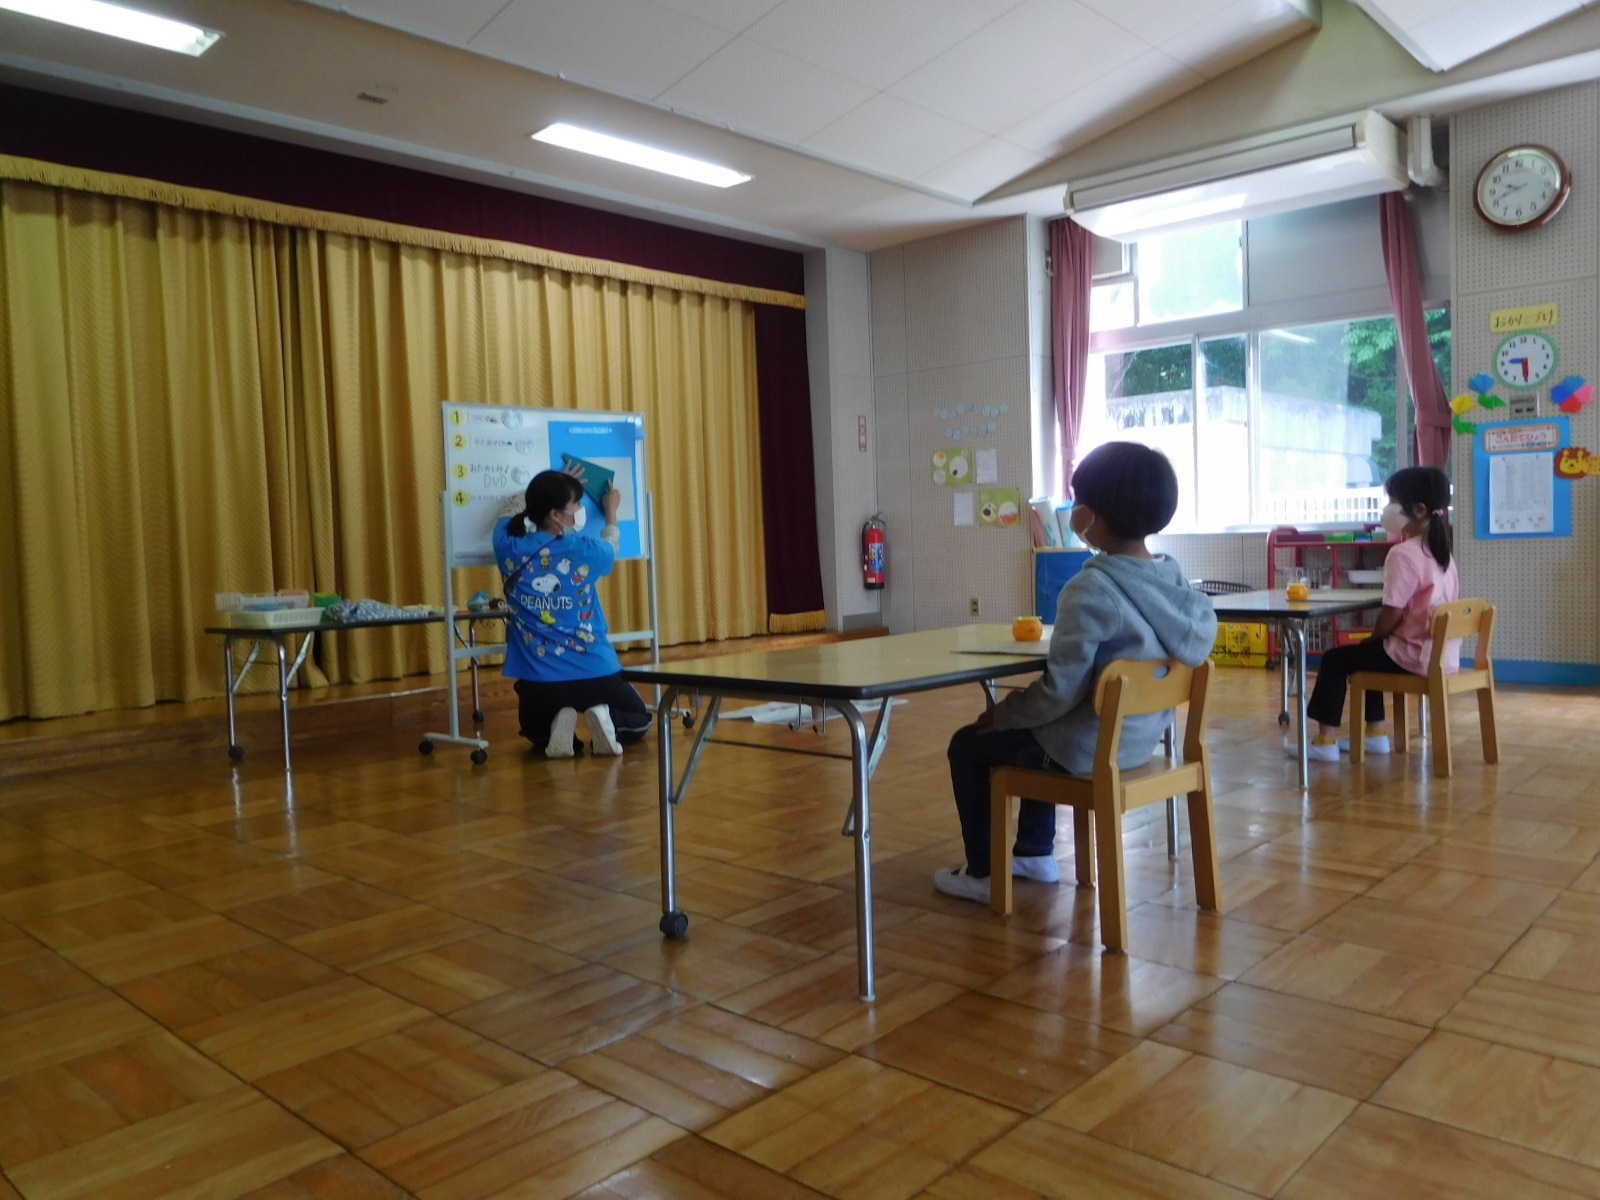 着席している男の子と女の子の園児の前で、先生がホワイトボードの前で織り方を教えている写真